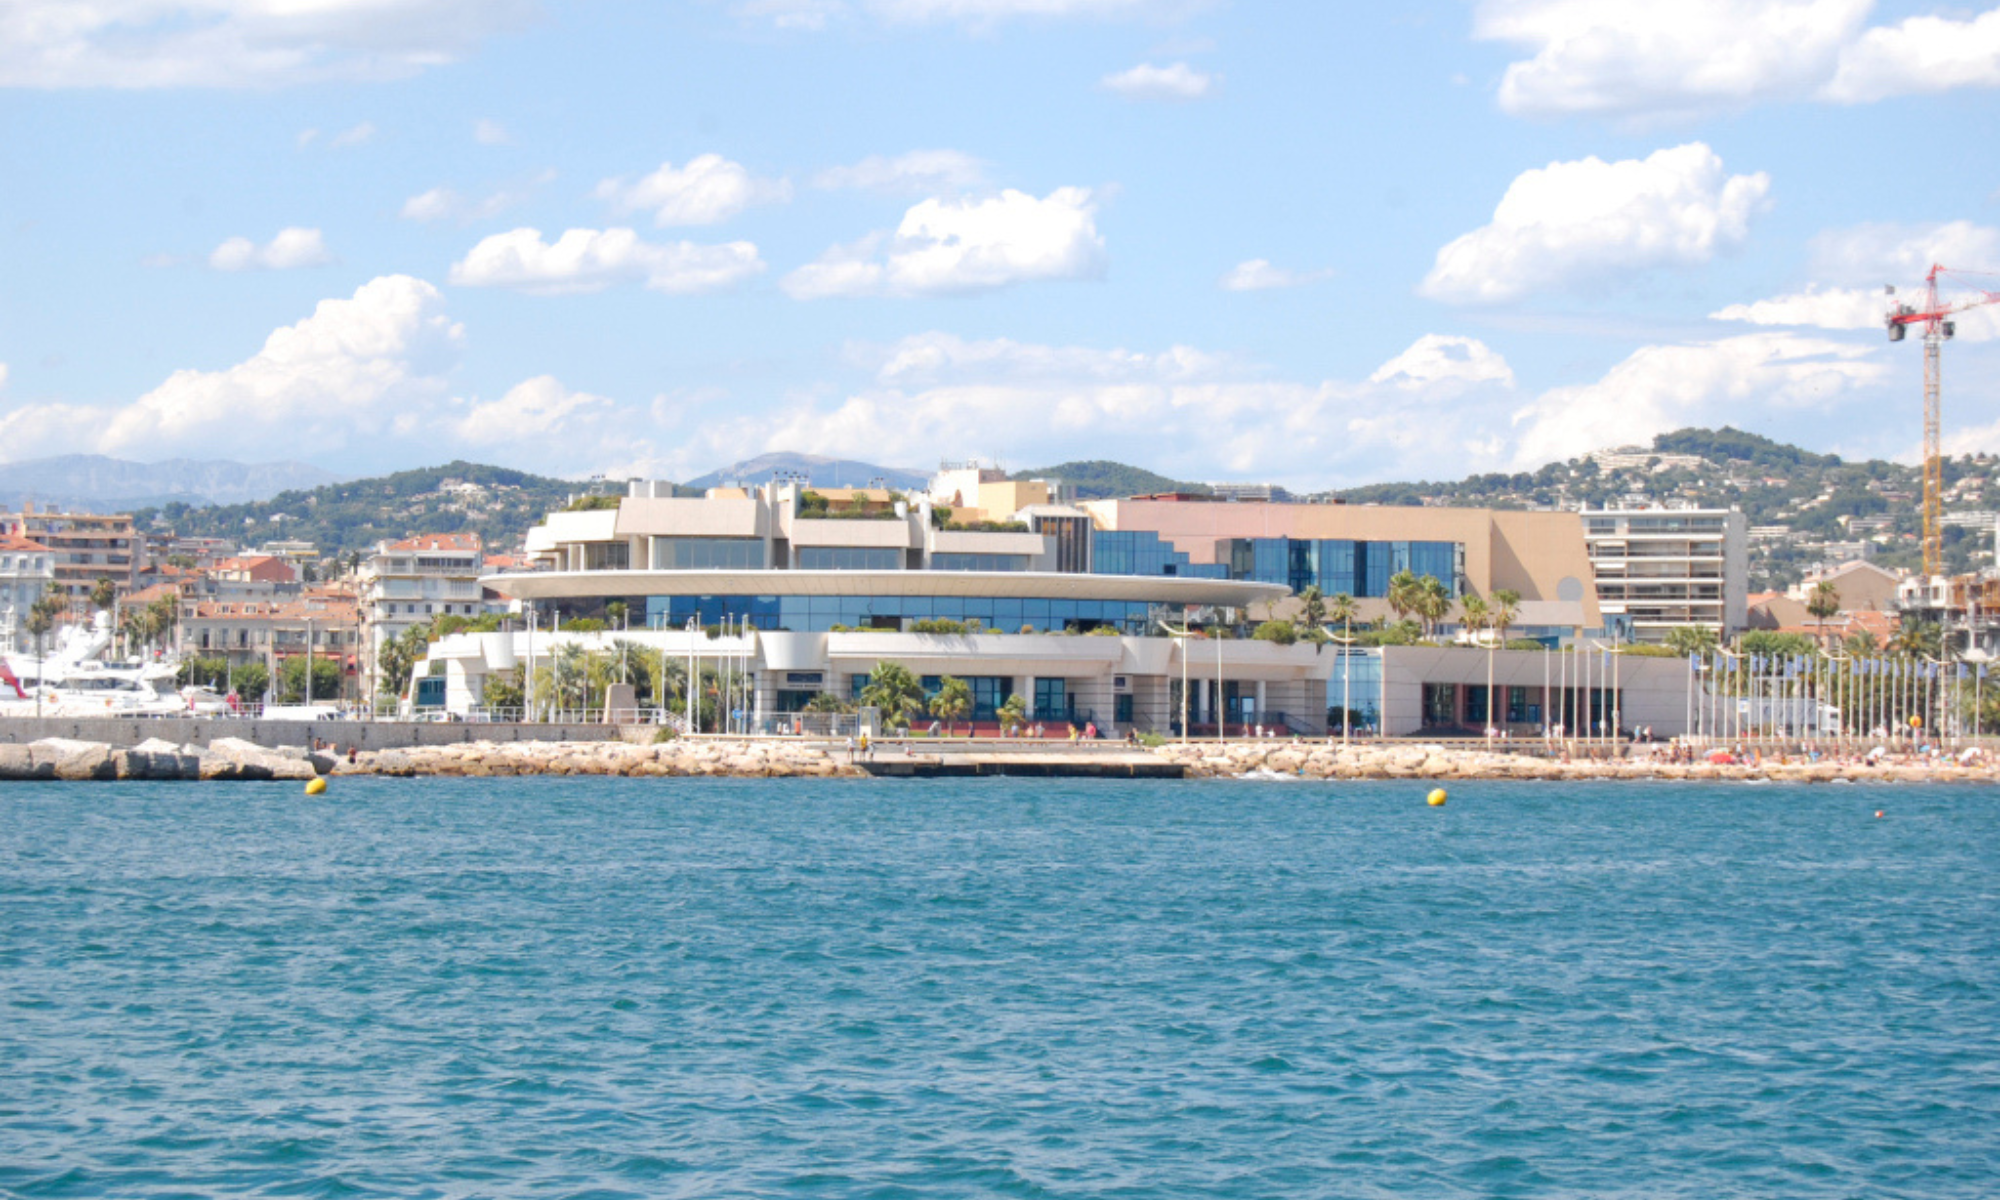 View of The Palais des Festivals à Cannes